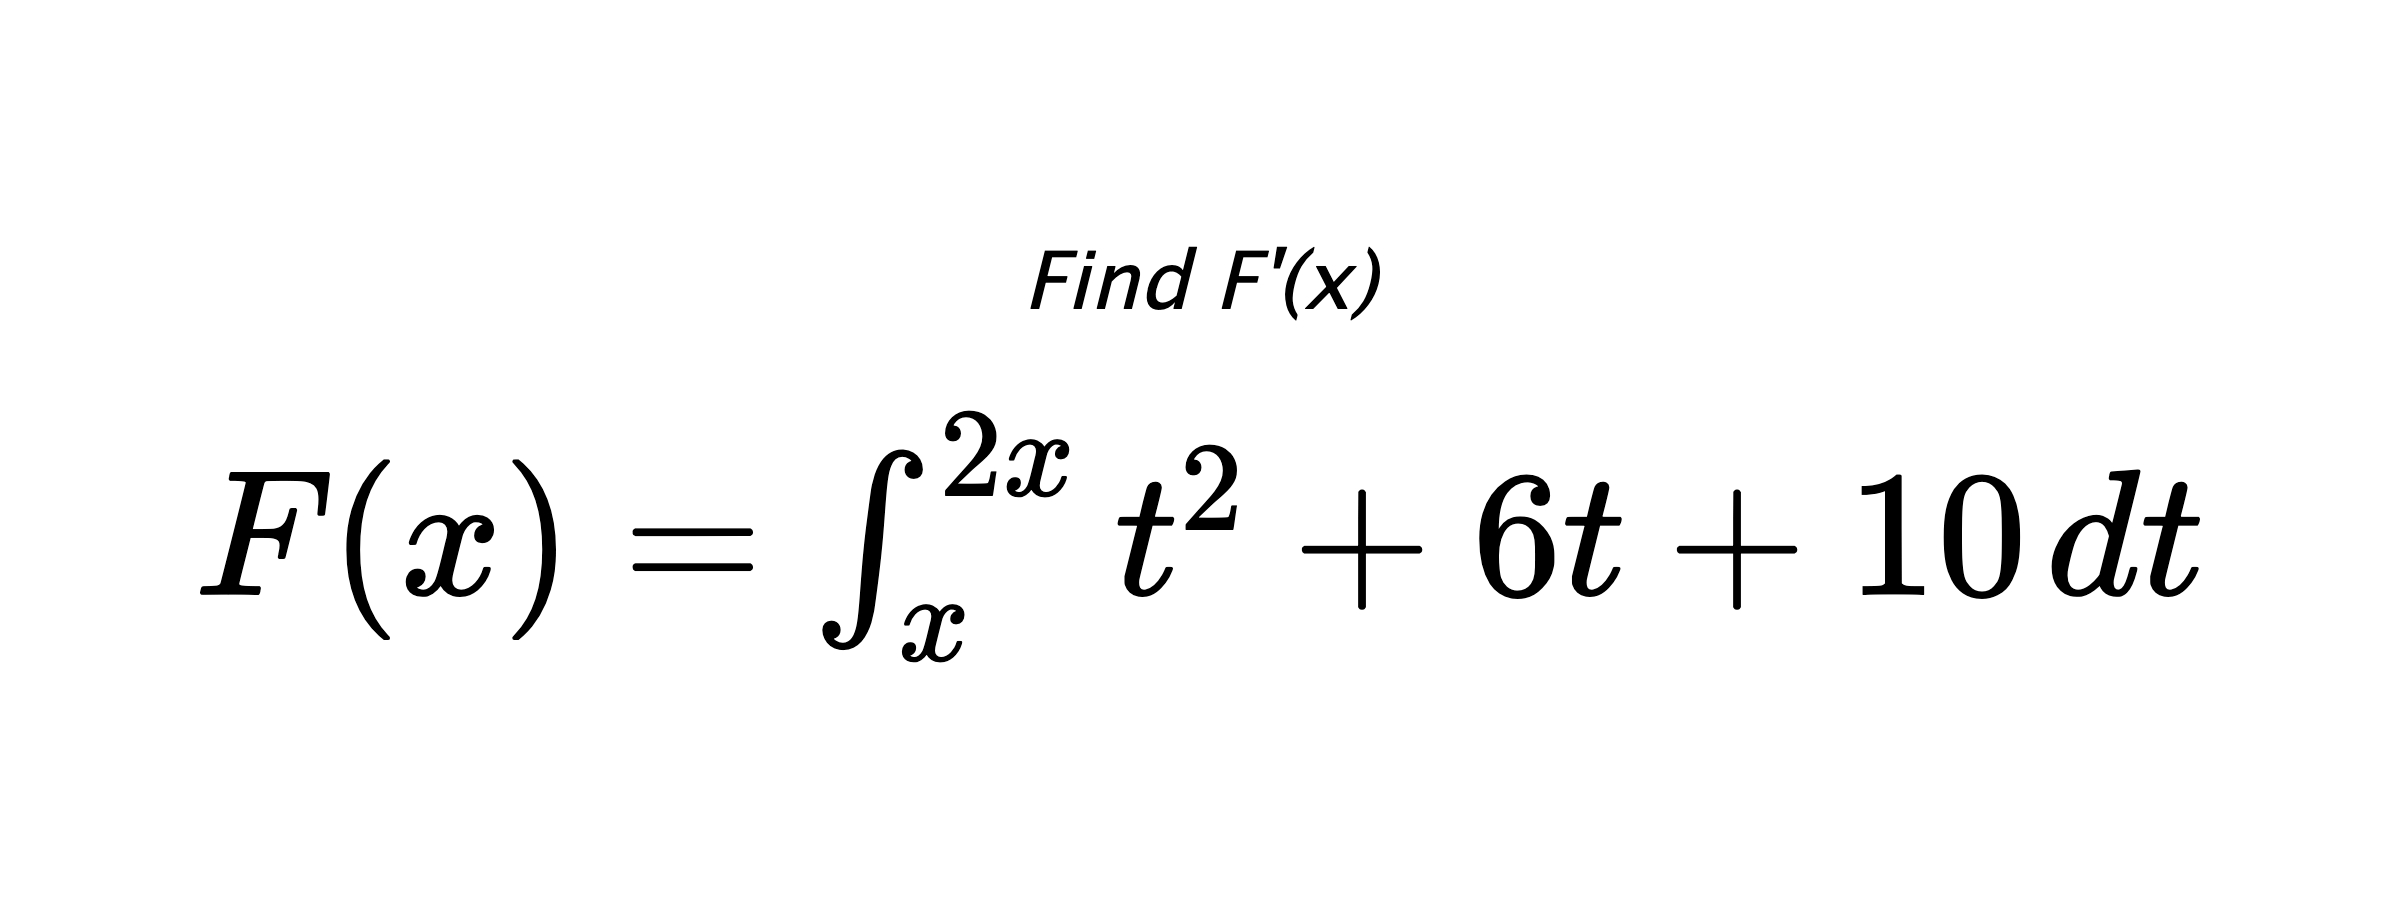 Find F'(x) $ F(x)=\int_{x}^{2x} t^{2}+6t+10 \hspace{0.2cm} dt $